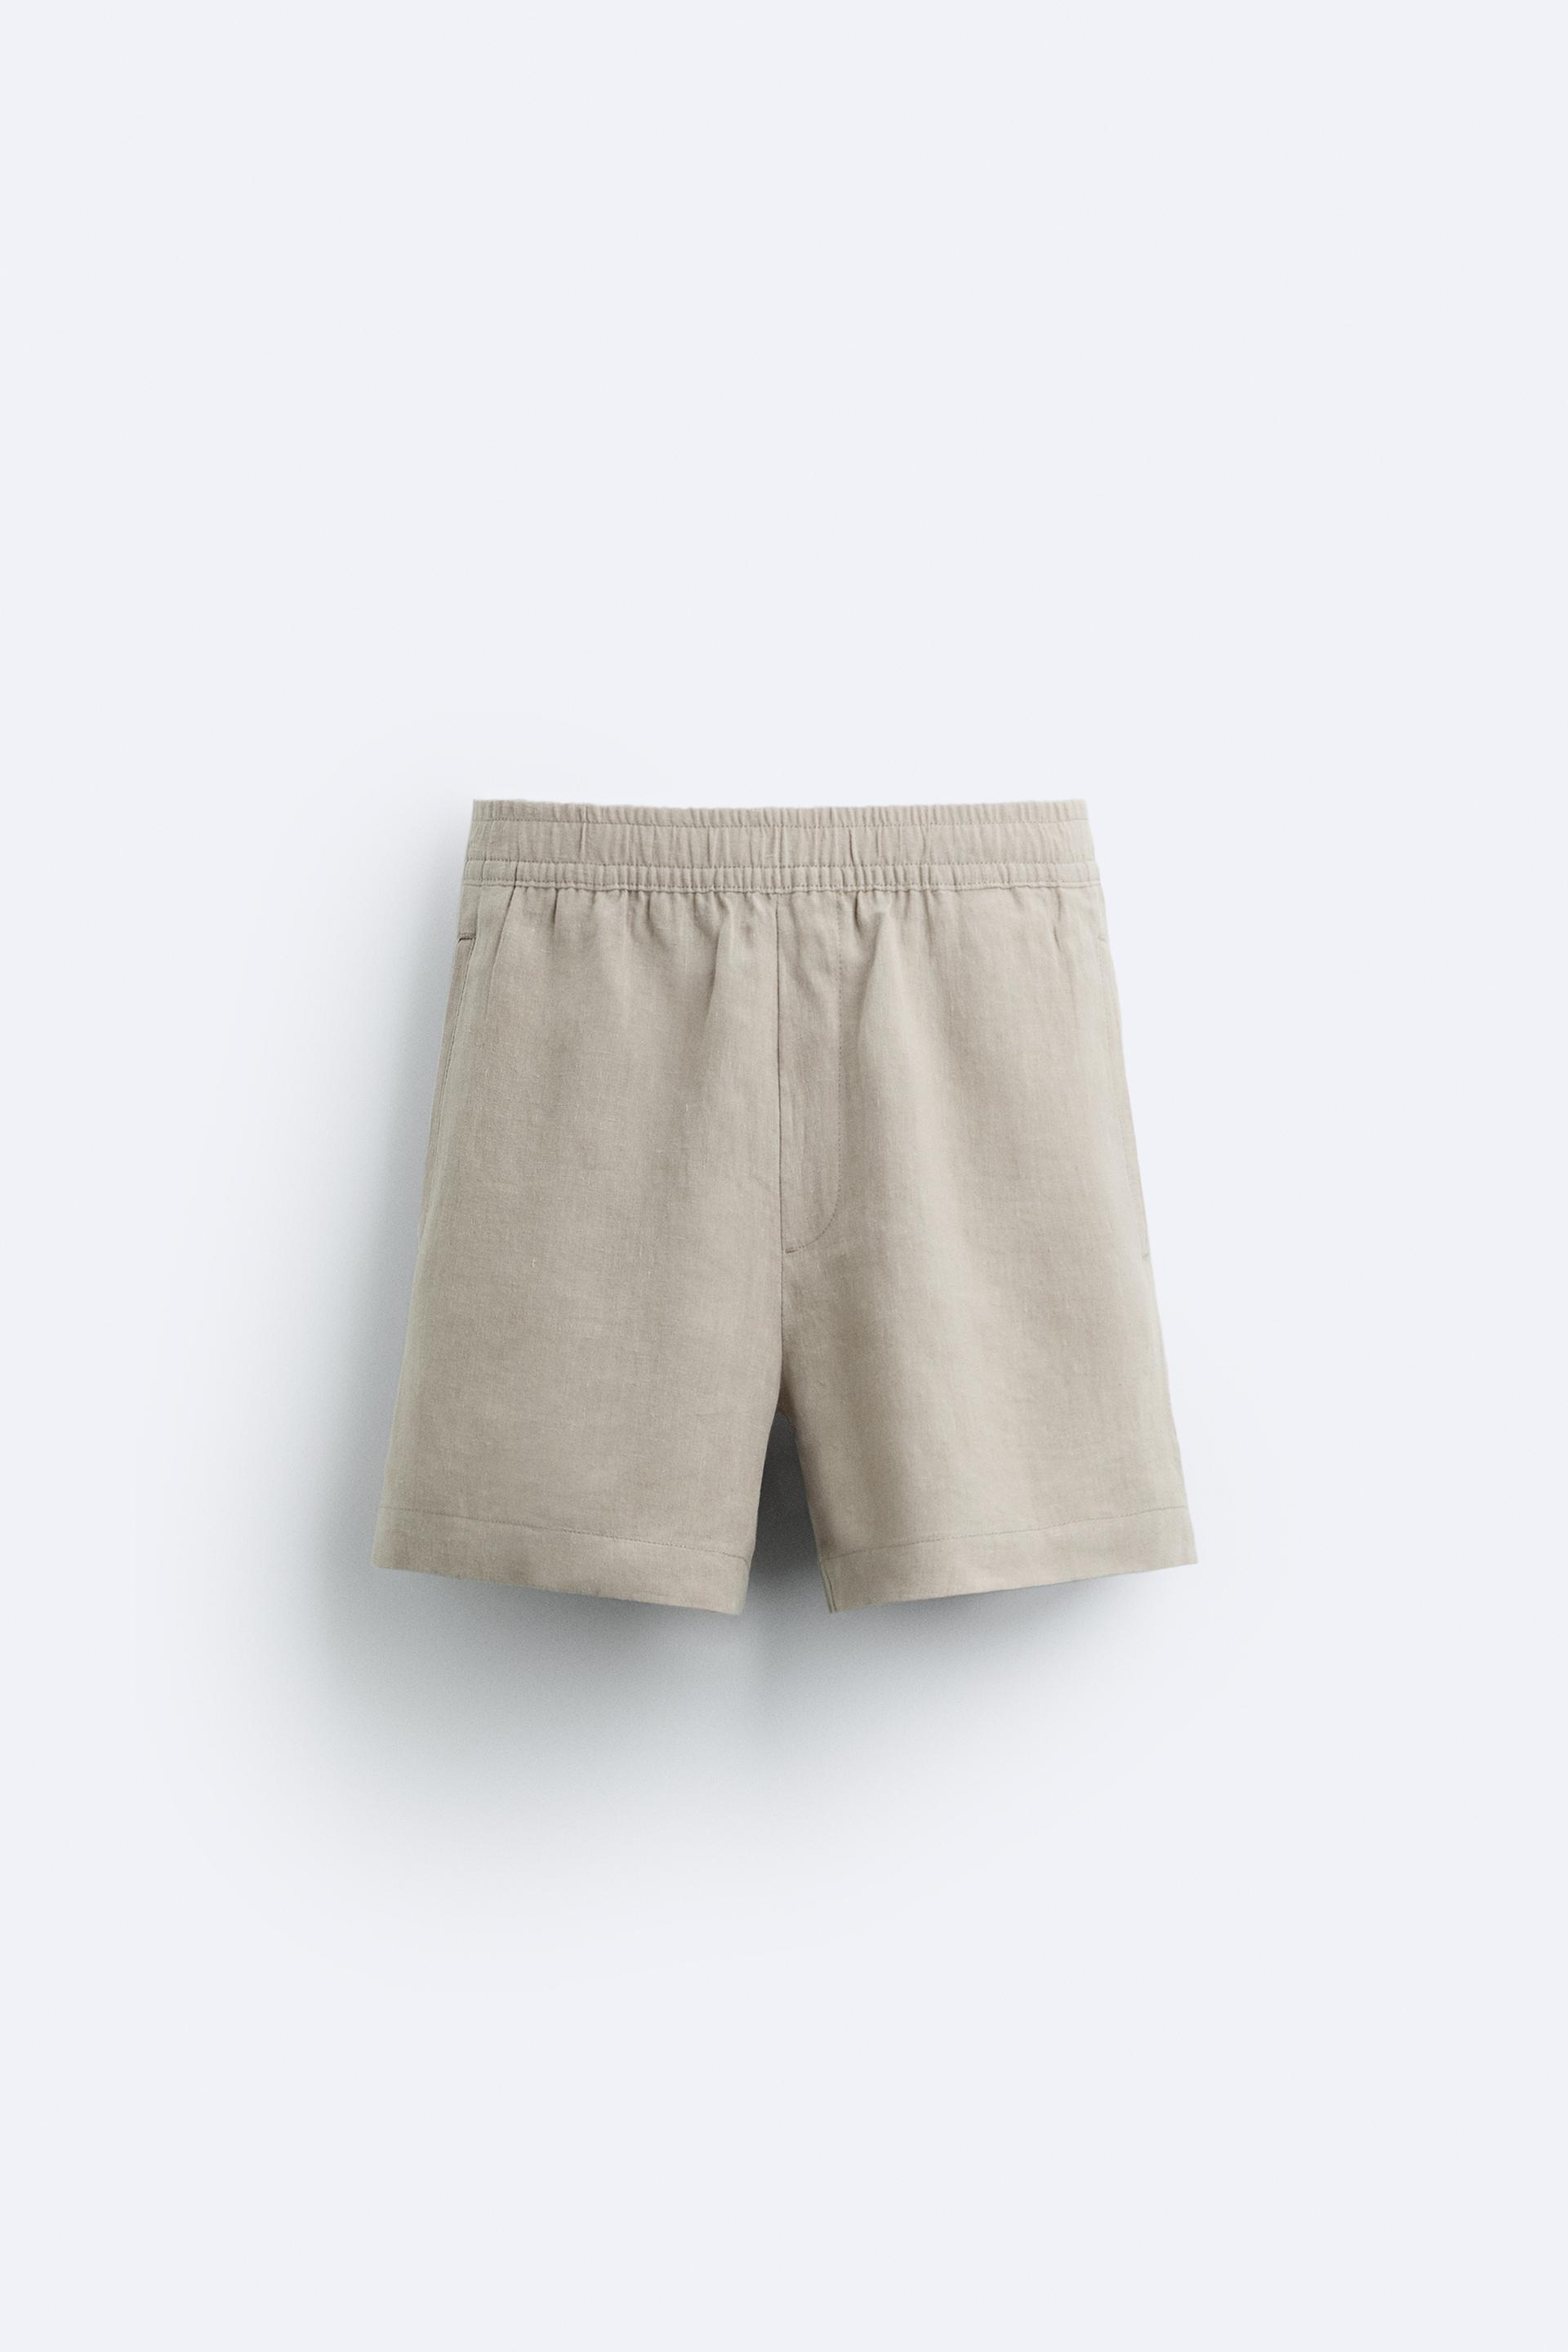 LINEN SHORTS WOMEN, Natural Linen Shorts, Linen Shorts, Womens Linen Shorts,  Linen Shorts for Men, 100% Linen, Linen Organic Clothing -  Canada